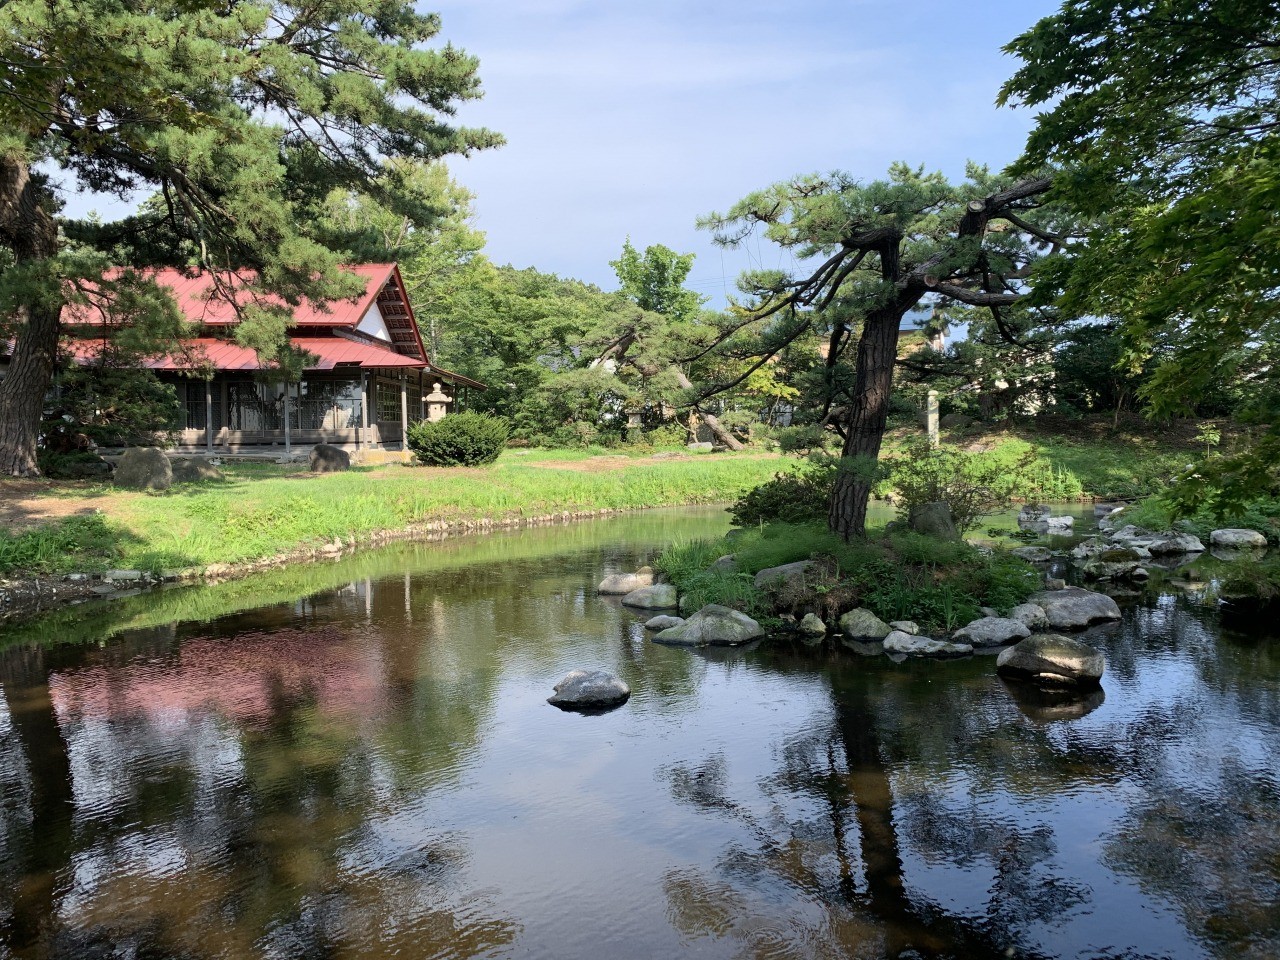 บ้านตระกูลมิยะโคชิ บ้านเดี่ยวปลีกวิเวก ท่ามกลางสวนสวย